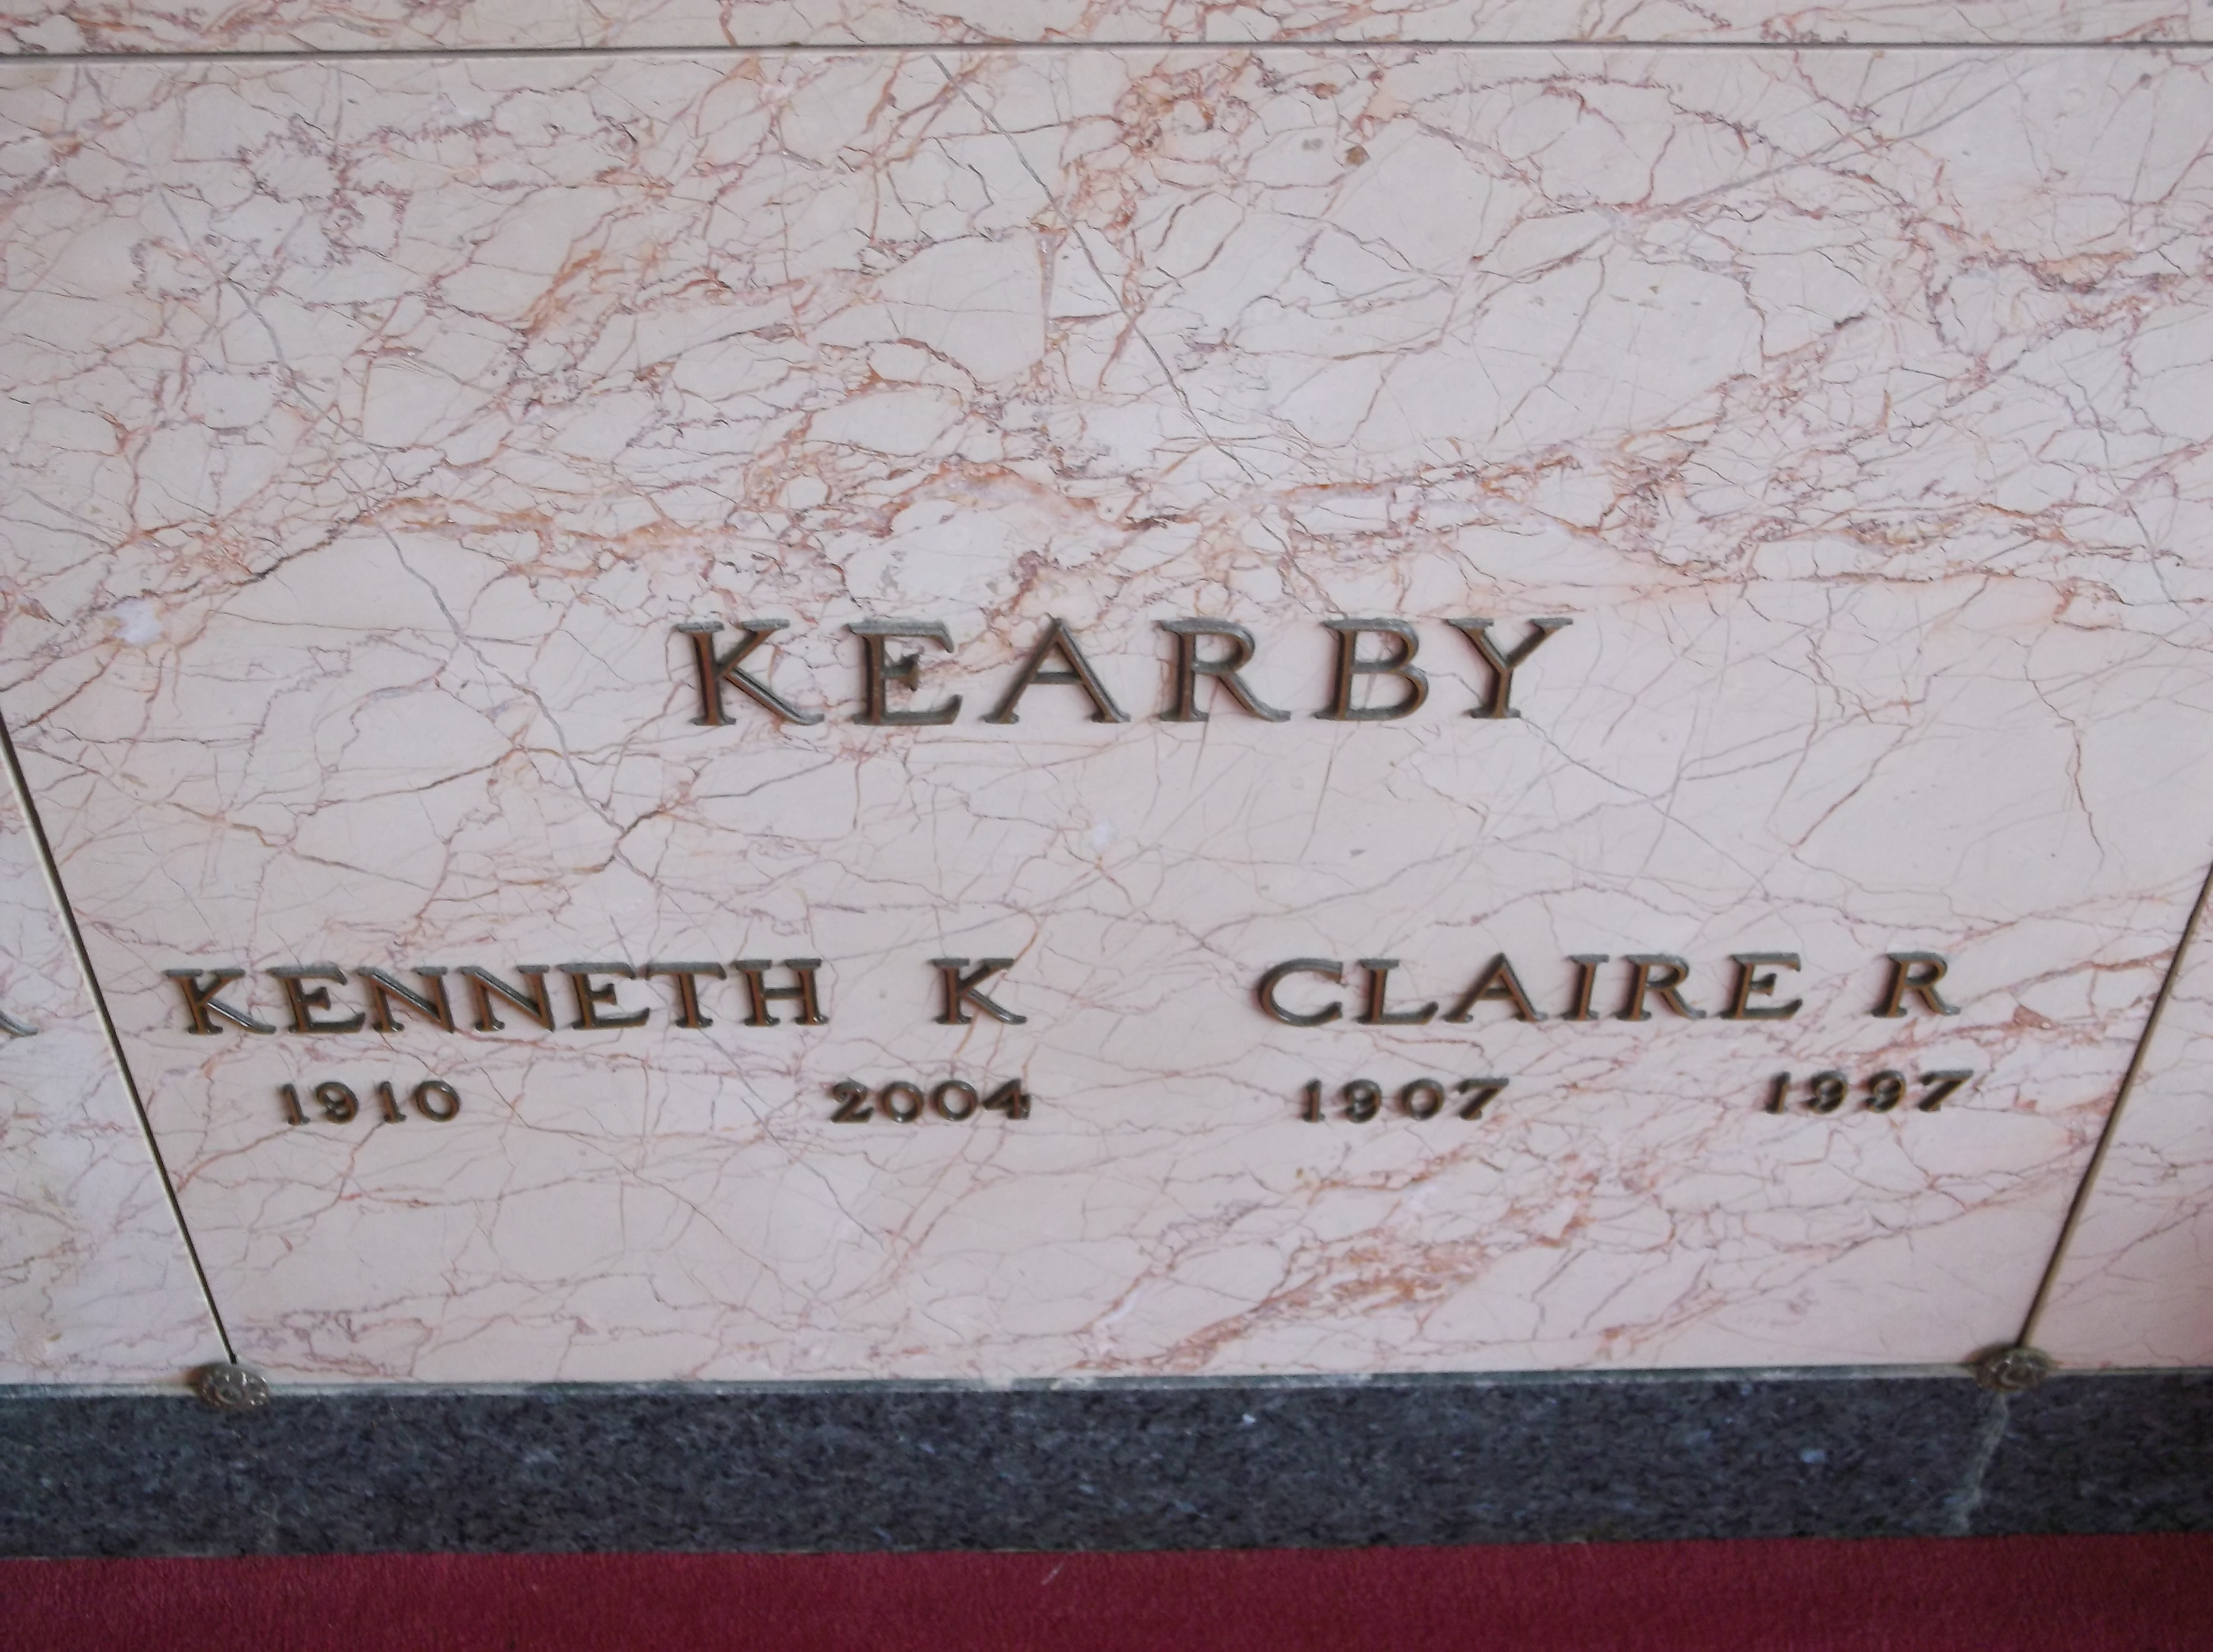 Kenneth K Kearby